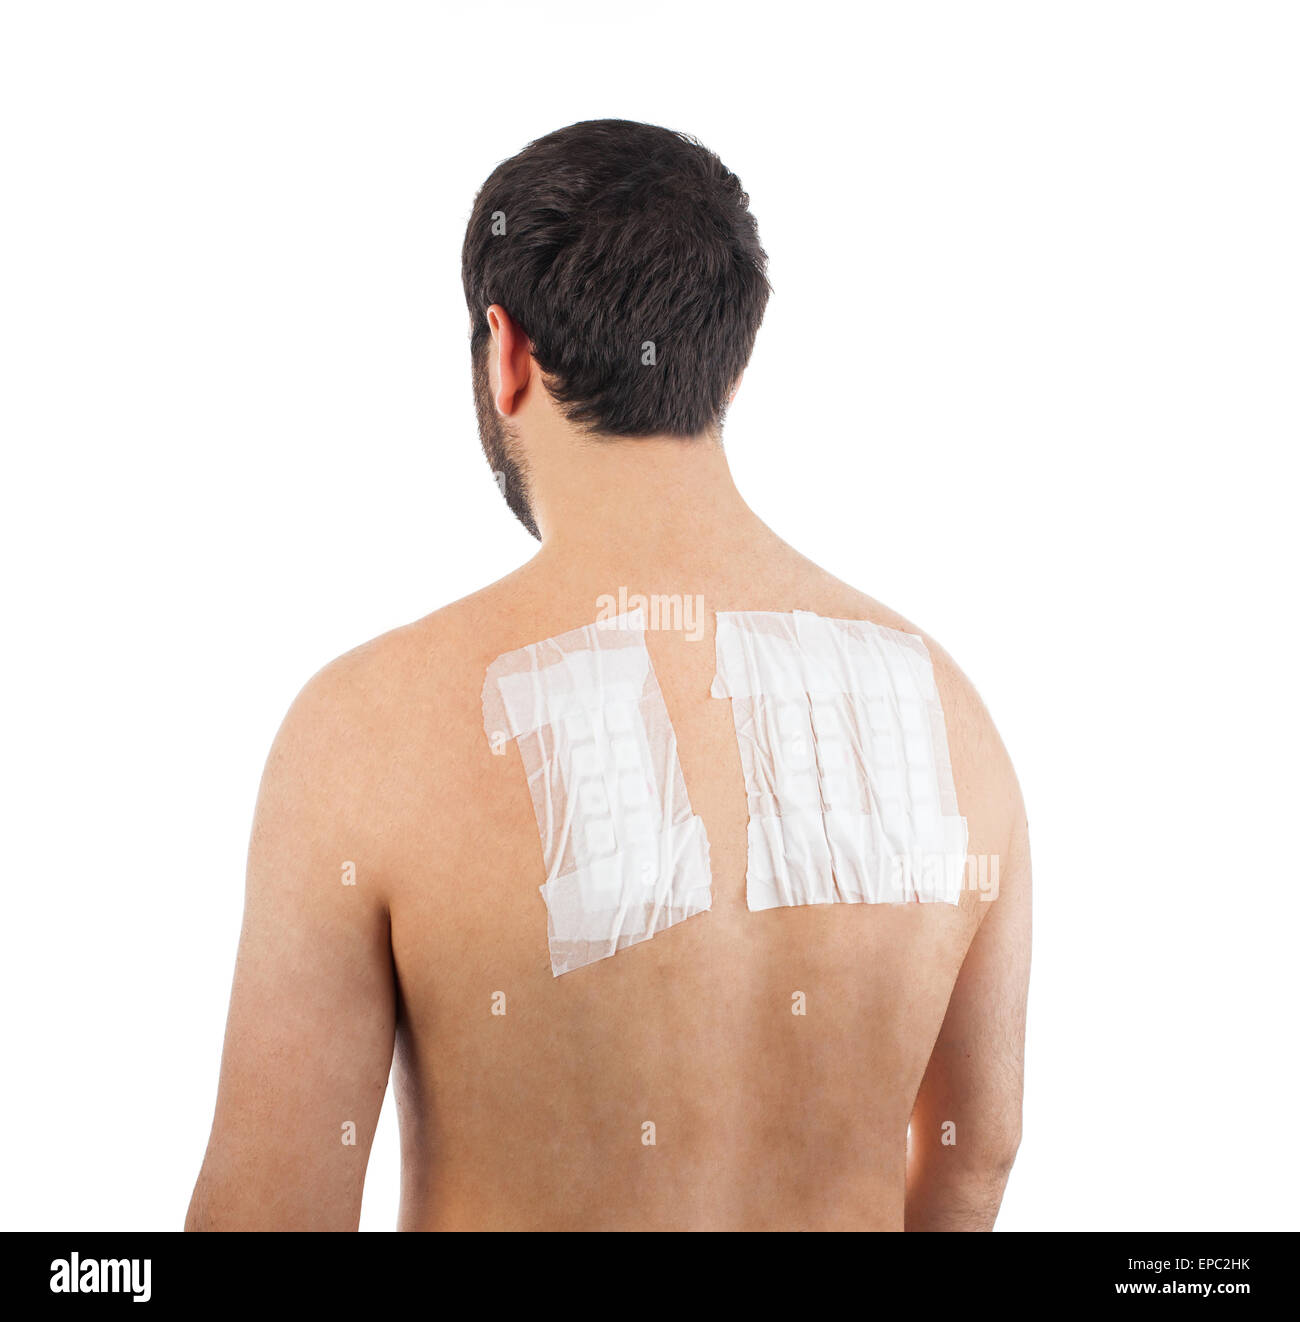 Alergia cutánea Prueba de parche en la espalda del paciente varón sobre fondo blanco. Foto de stock